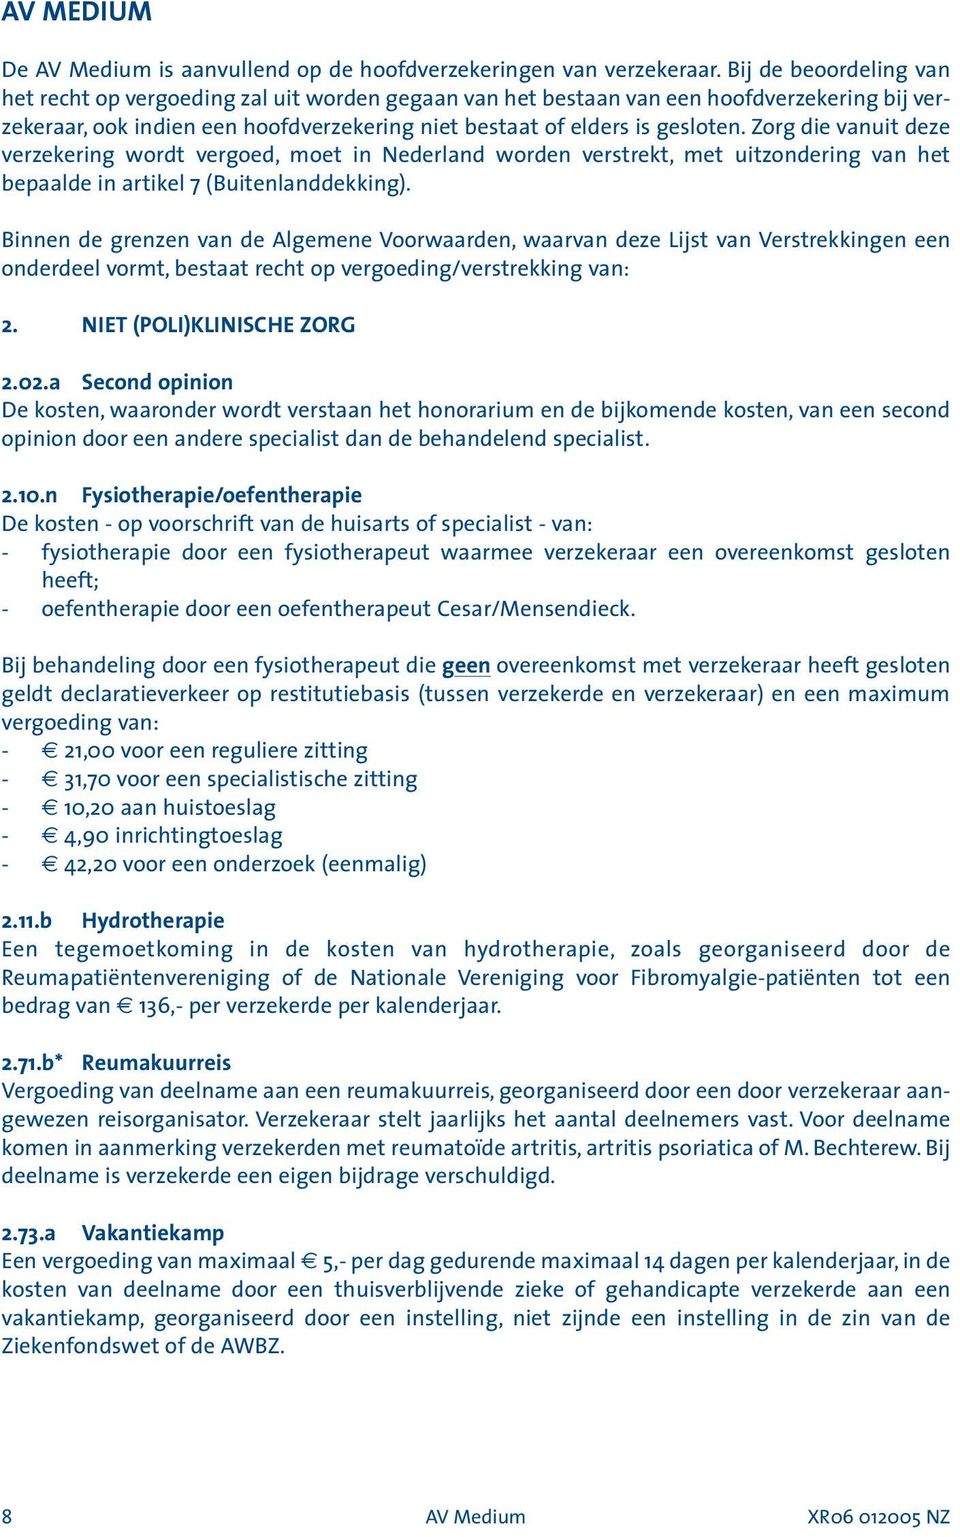 Zorg die vanuit deze verzekering wordt vergoed, moet in Nederland worden verstrekt, met uitzondering van het bepaalde in artikel 7 (Buitenlanddekking).